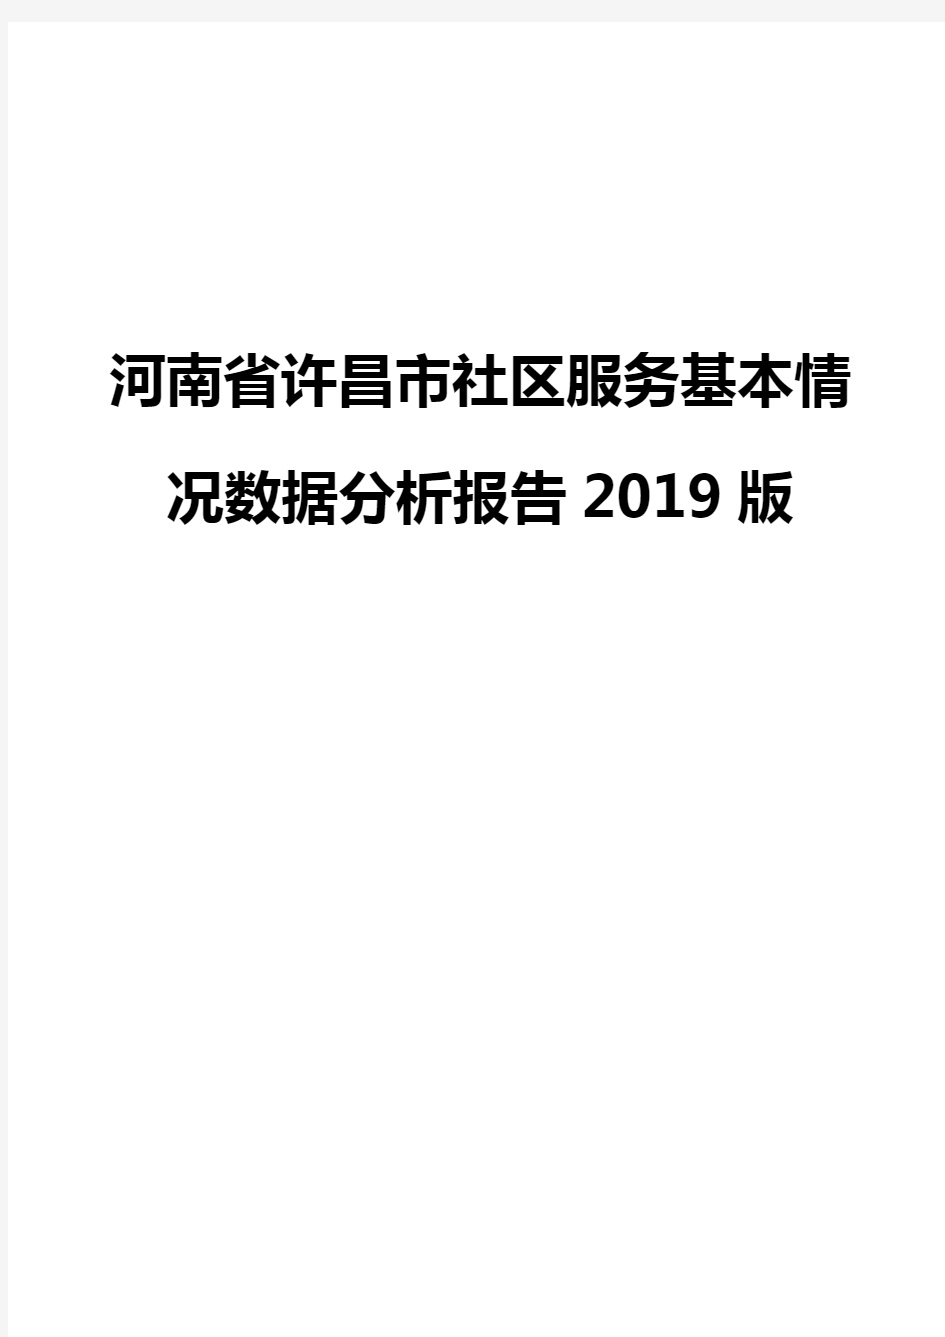 河南省许昌市社区服务基本情况数据分析报告2019版